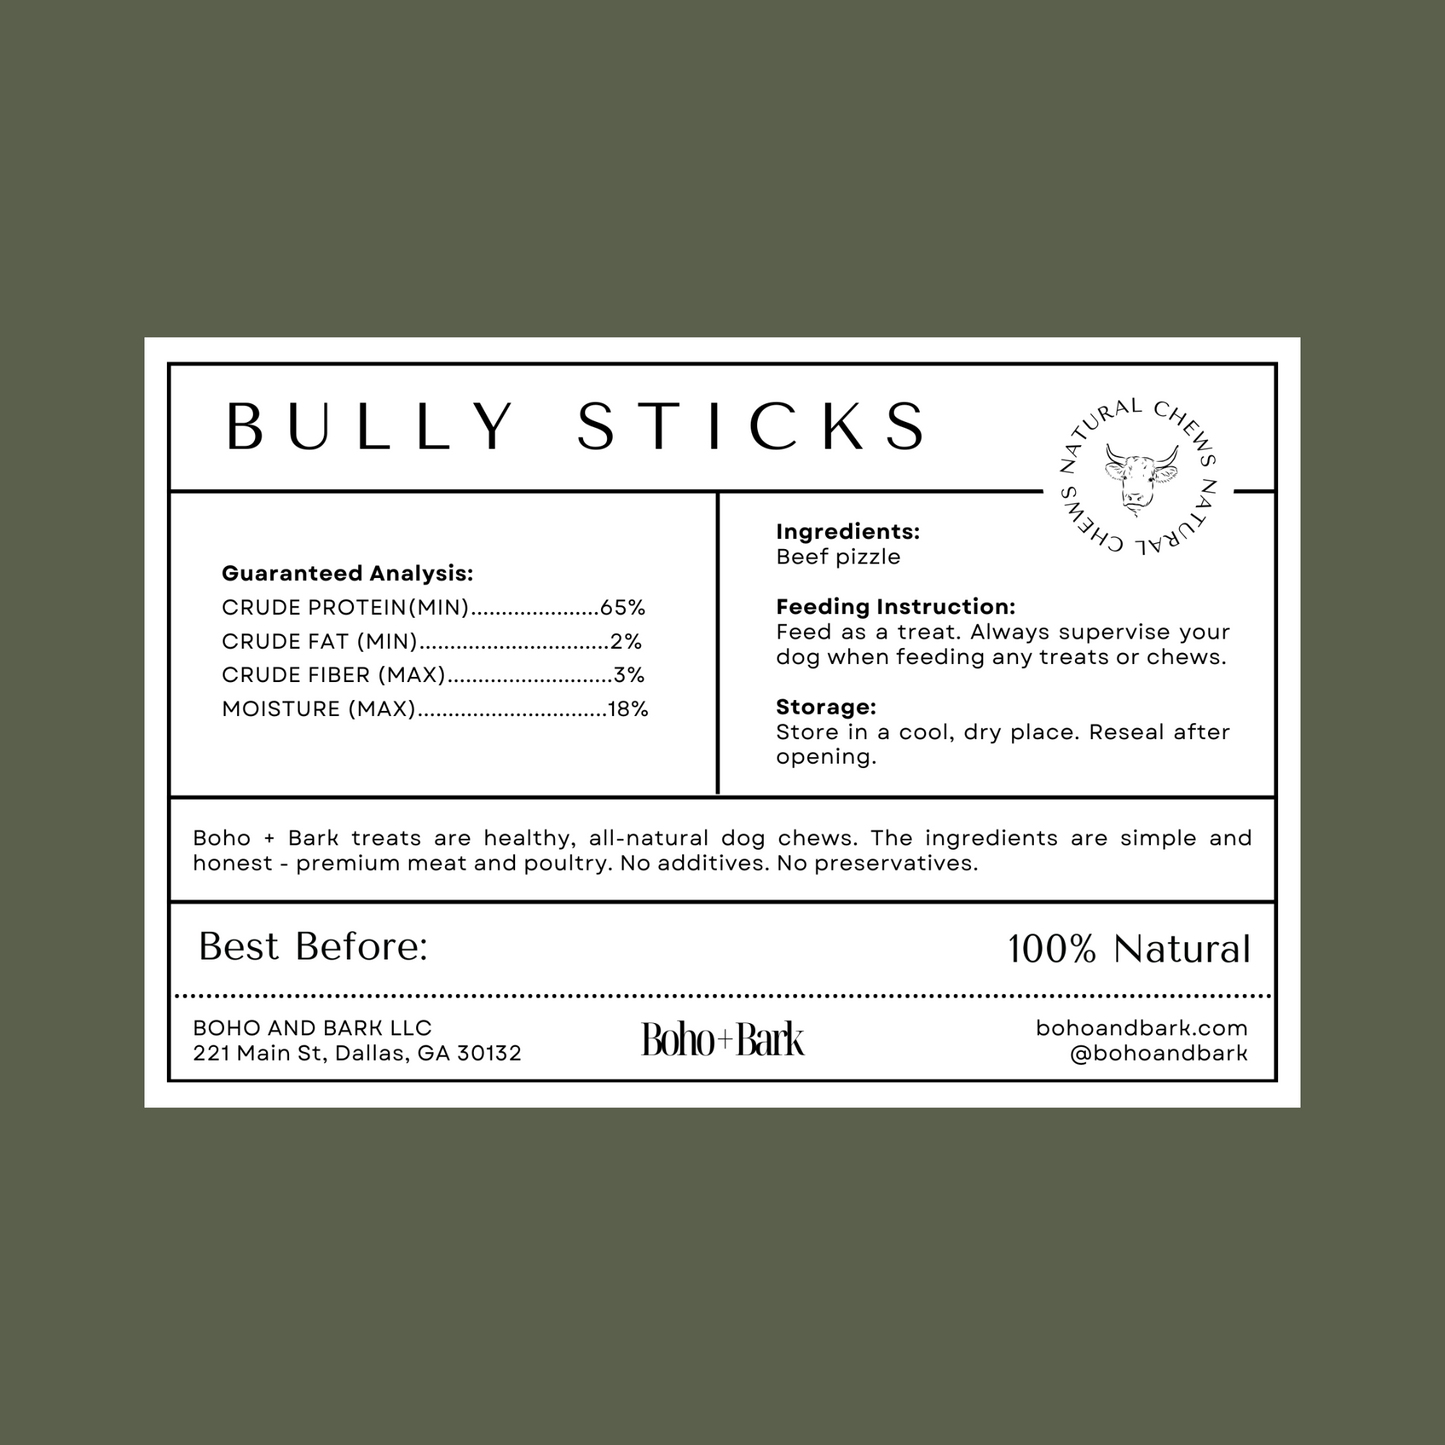 5 Pack of Bully Sticks